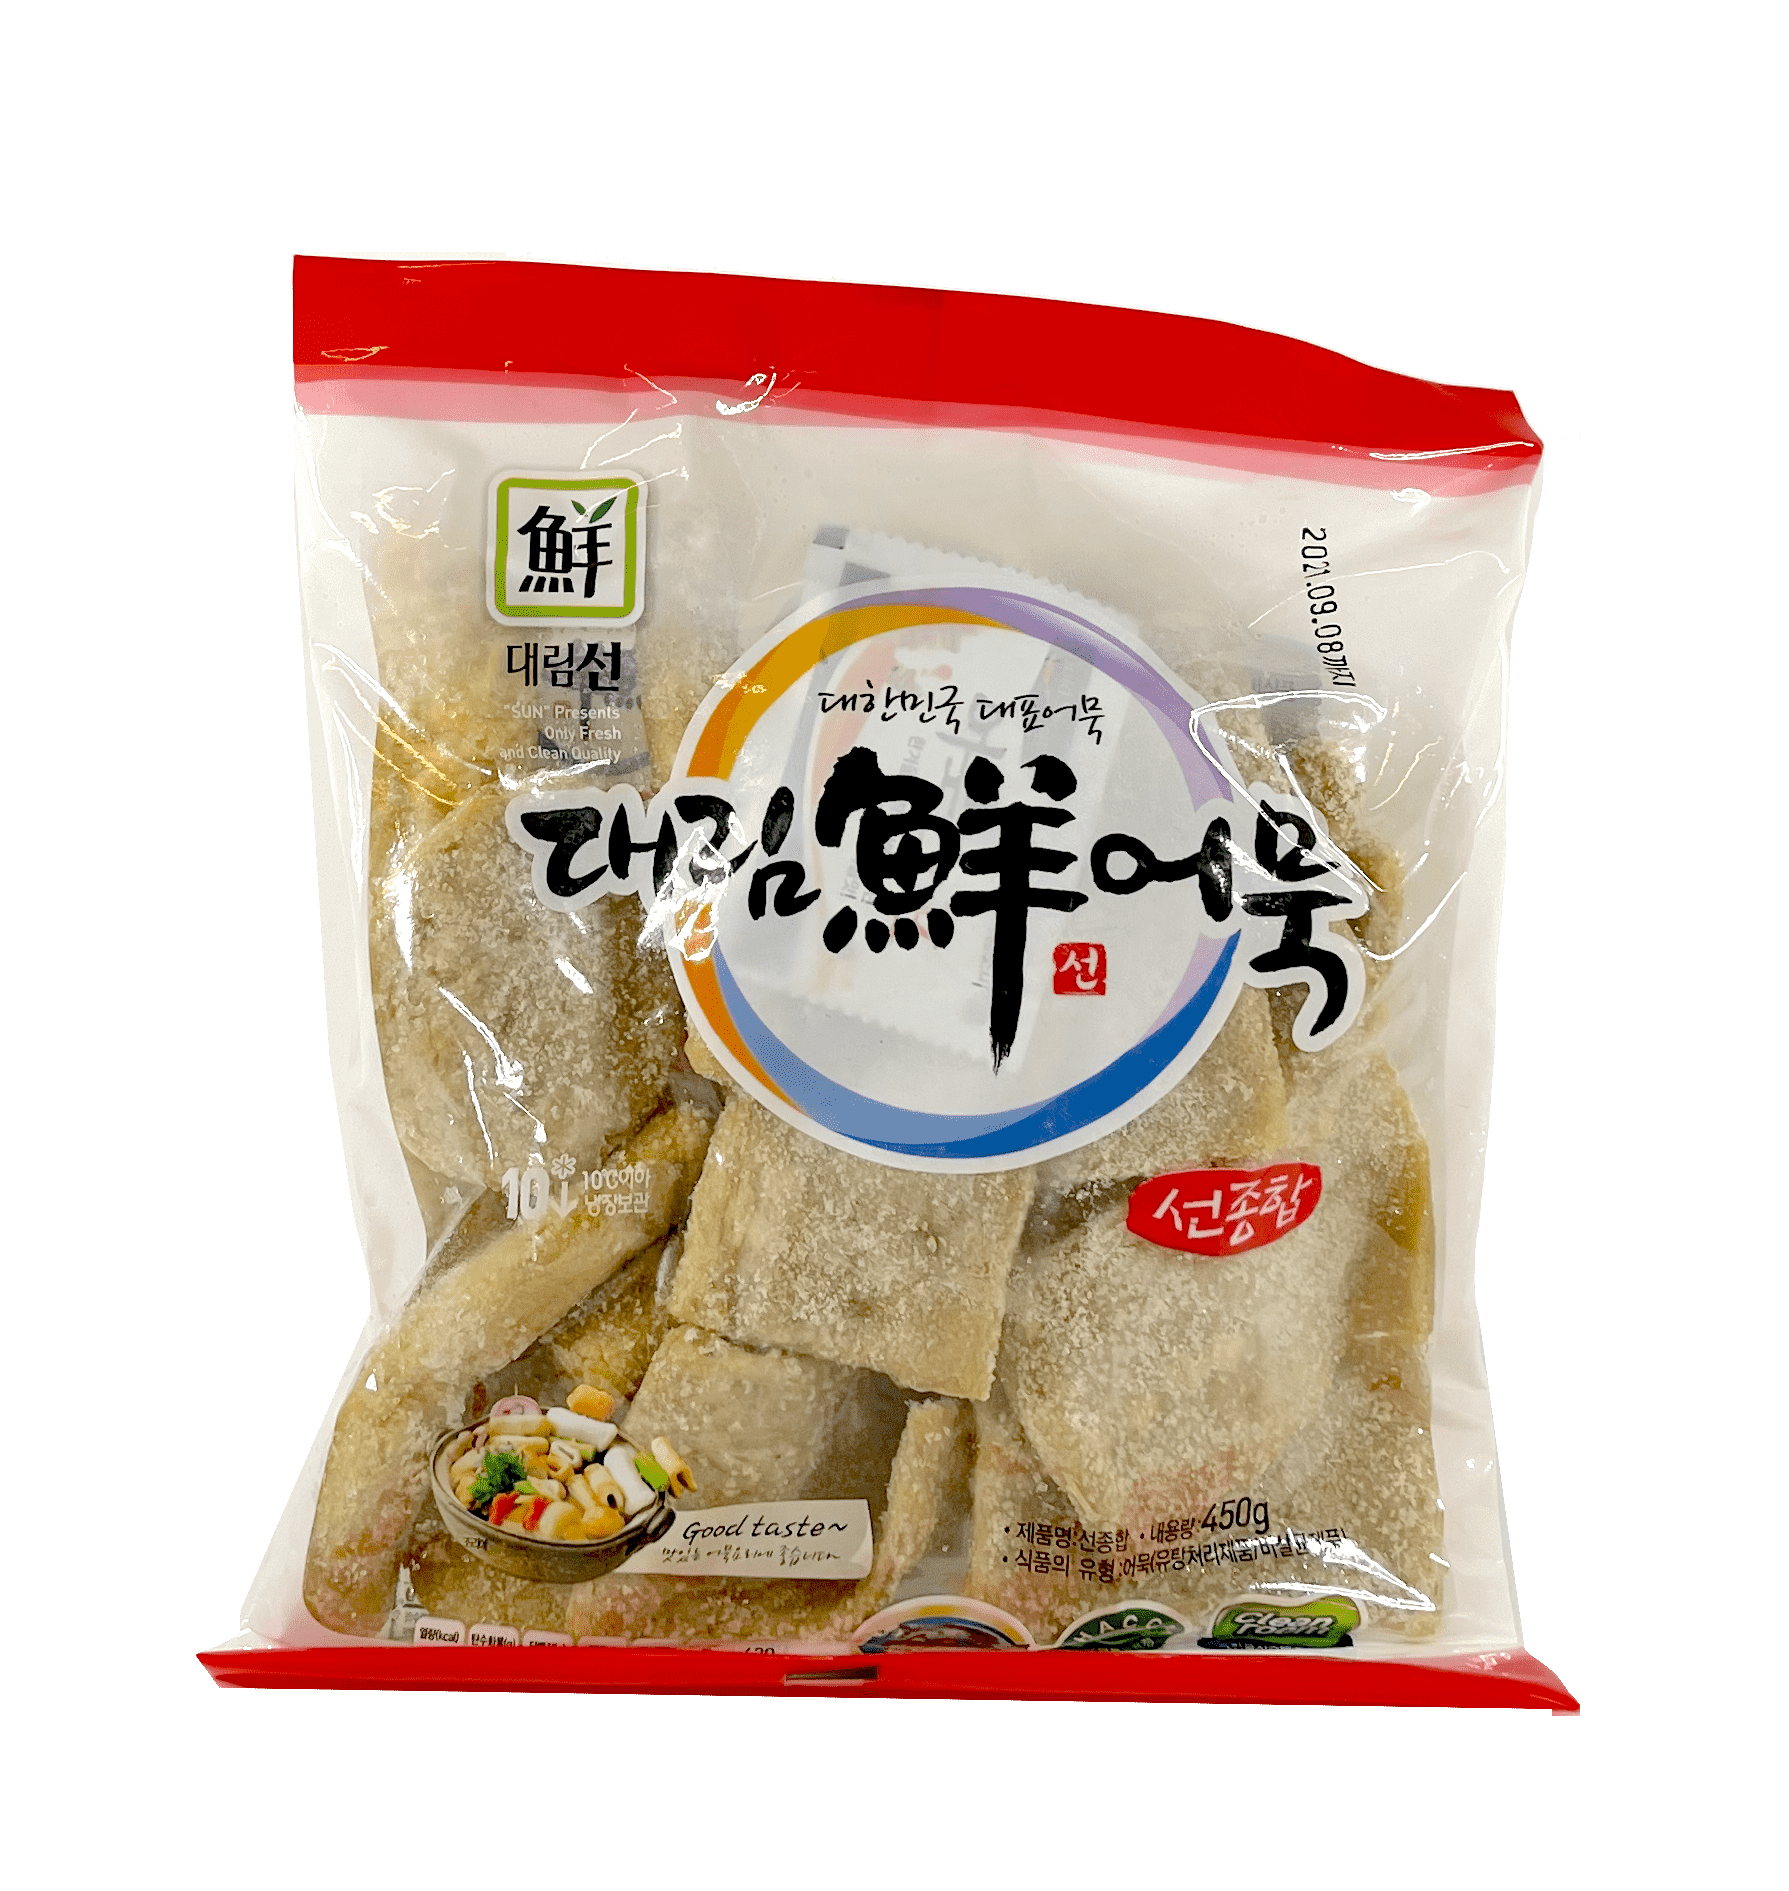 Tteokbokki (Spicy Stir-fried Rice Cakes) - Korean Bapsang